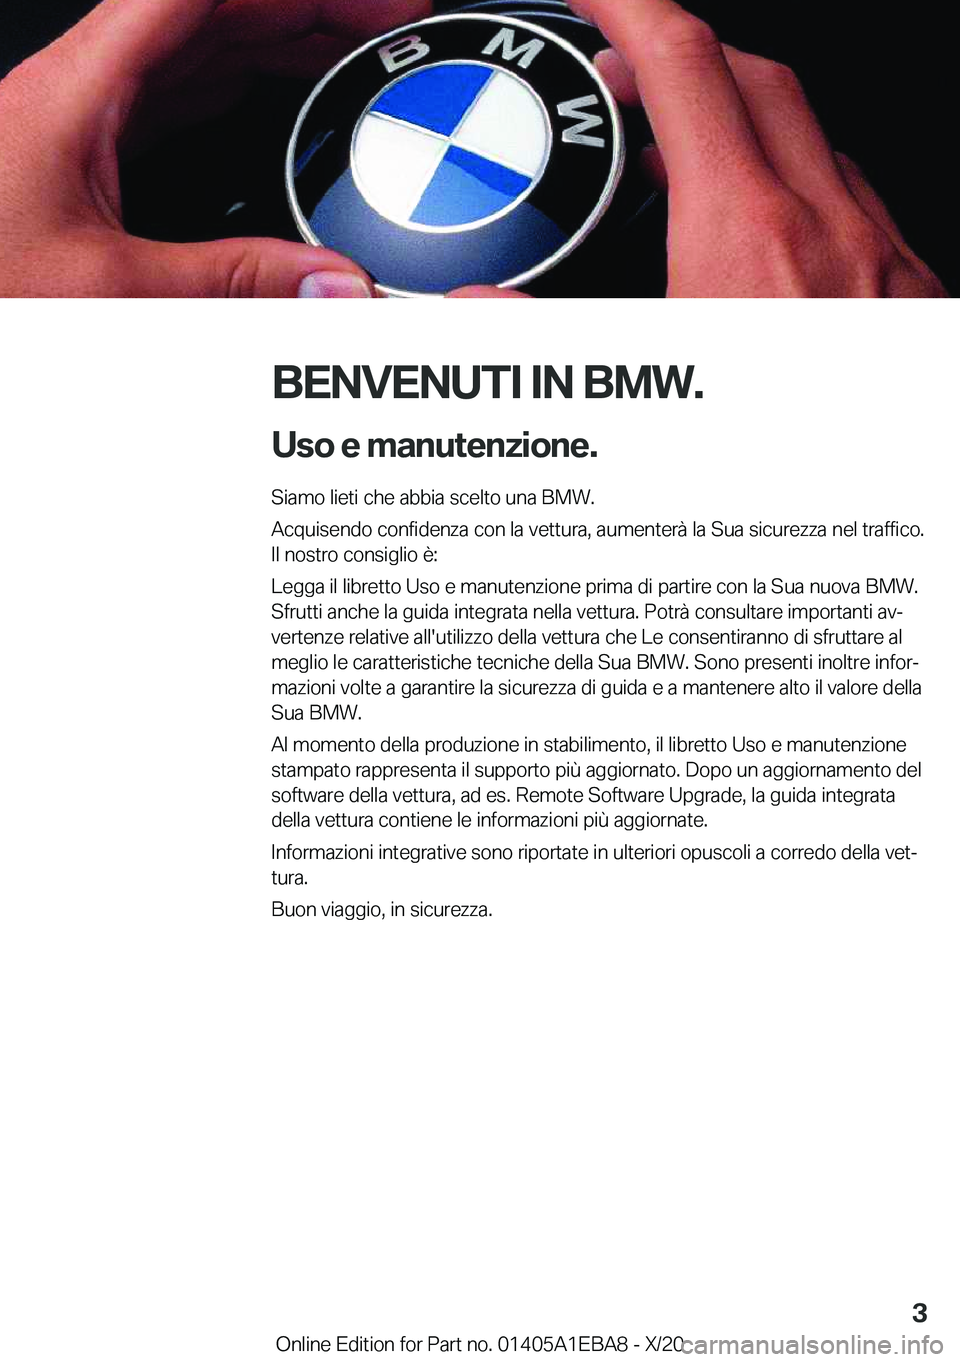 BMW 3 SERIES 2021  Libretti Di Uso E manutenzione (in Italian) �B�E�N�V�E�N�U�T�I��I�N��B�M�W�.�U�s�o��e��m�a�n�u�t�e�n�z�i�o�n�e�.
�S�i�a�m�o��l�i�e�t�i��c�h�e��a�b�b�i�a��s�c�e�l�t�o��u�n�a��B�M�W�.
�A�c�q�u�i�s�e�n�d�o��c�o�n�f�i�d�e�n�z�a��c�o�n�